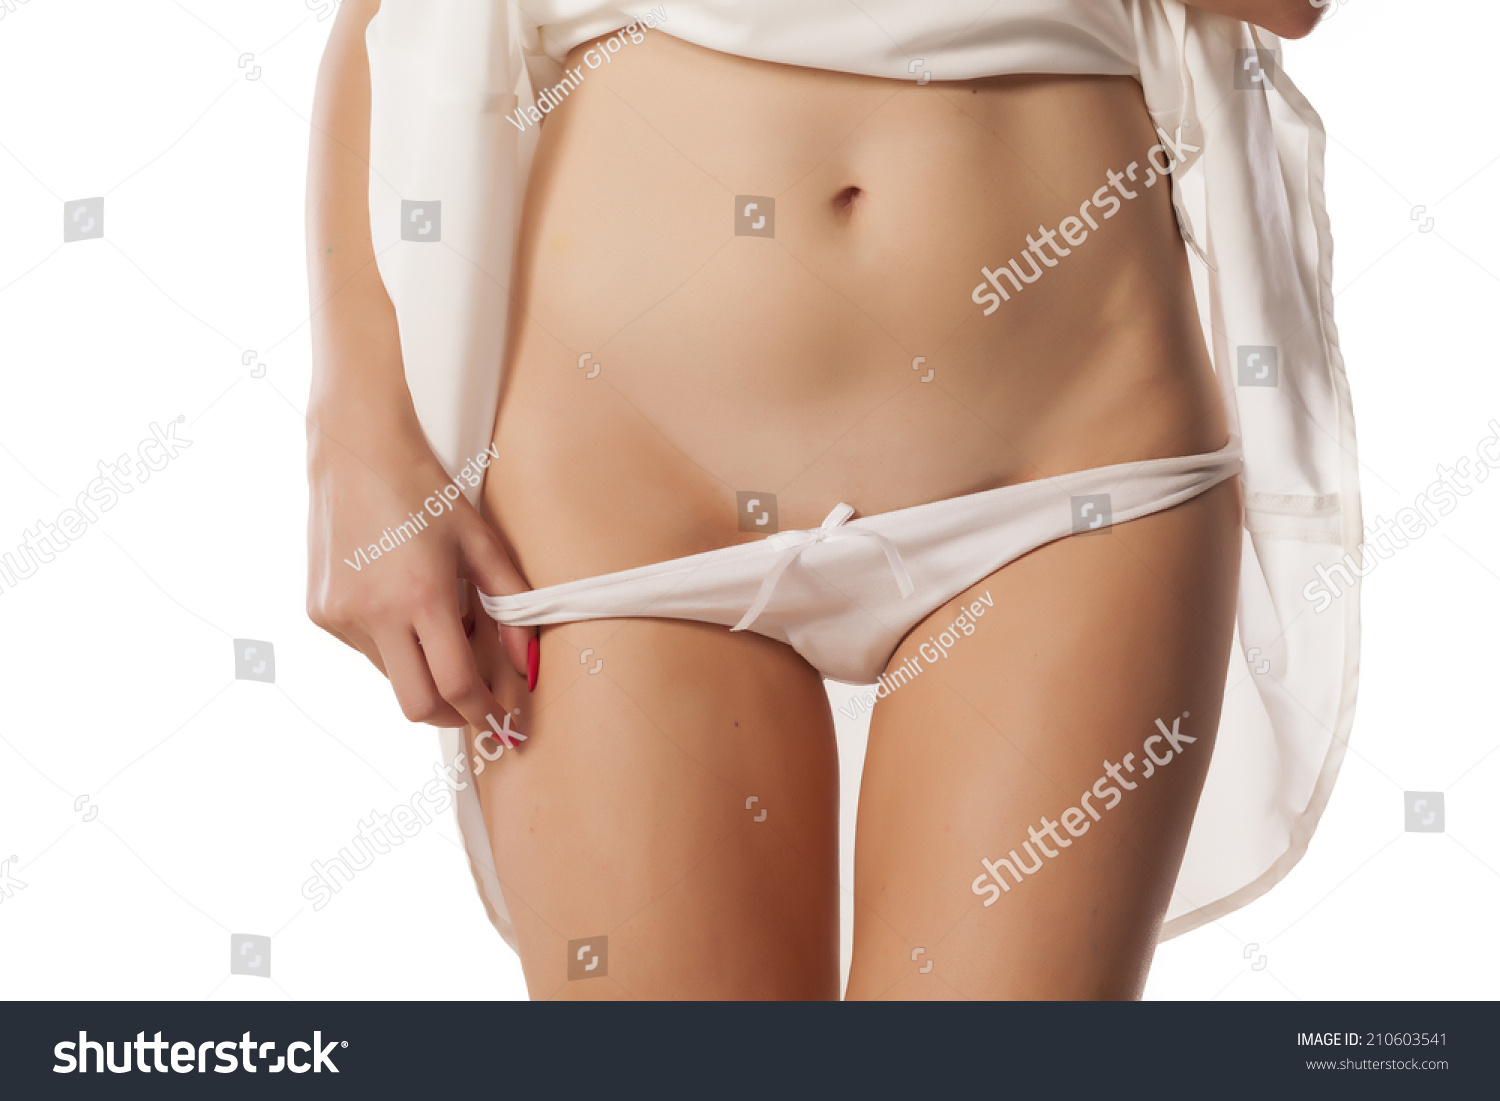 3 132 semi nude woman görseli stok fotoğraflar ve vektörler shutterstock